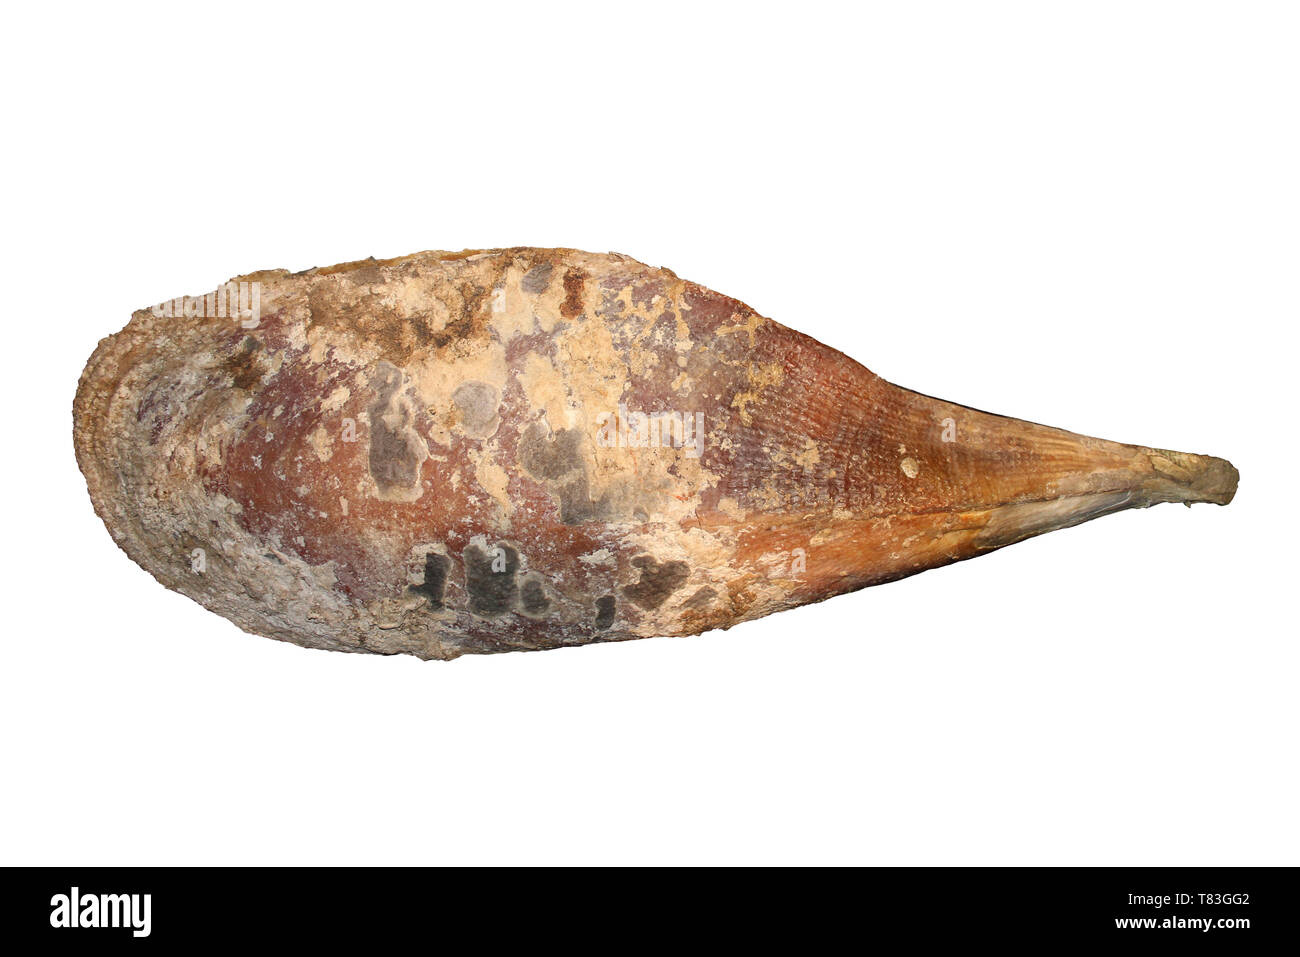 Moules ventilateur Kima fragilis - l'un des plus grands (30 à 48 cm de long) Mollusques bivalves européenne Banque D'Images